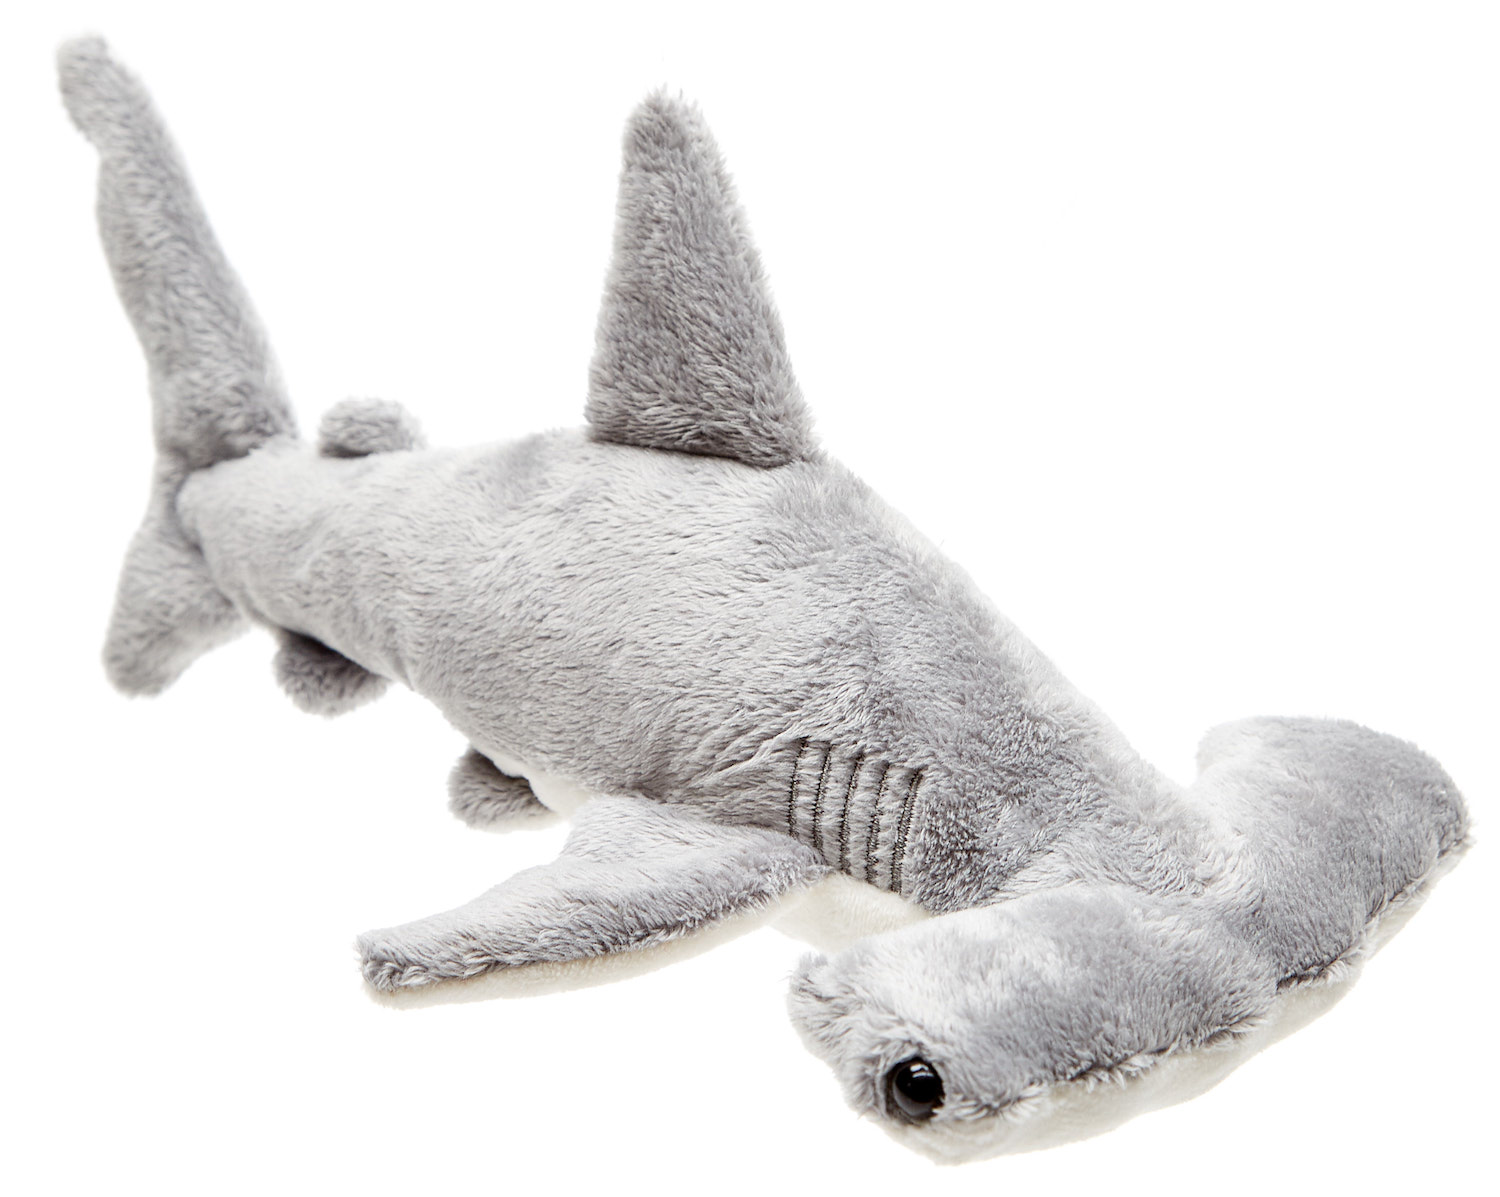  Hammerhead shark - 26 cm (length)